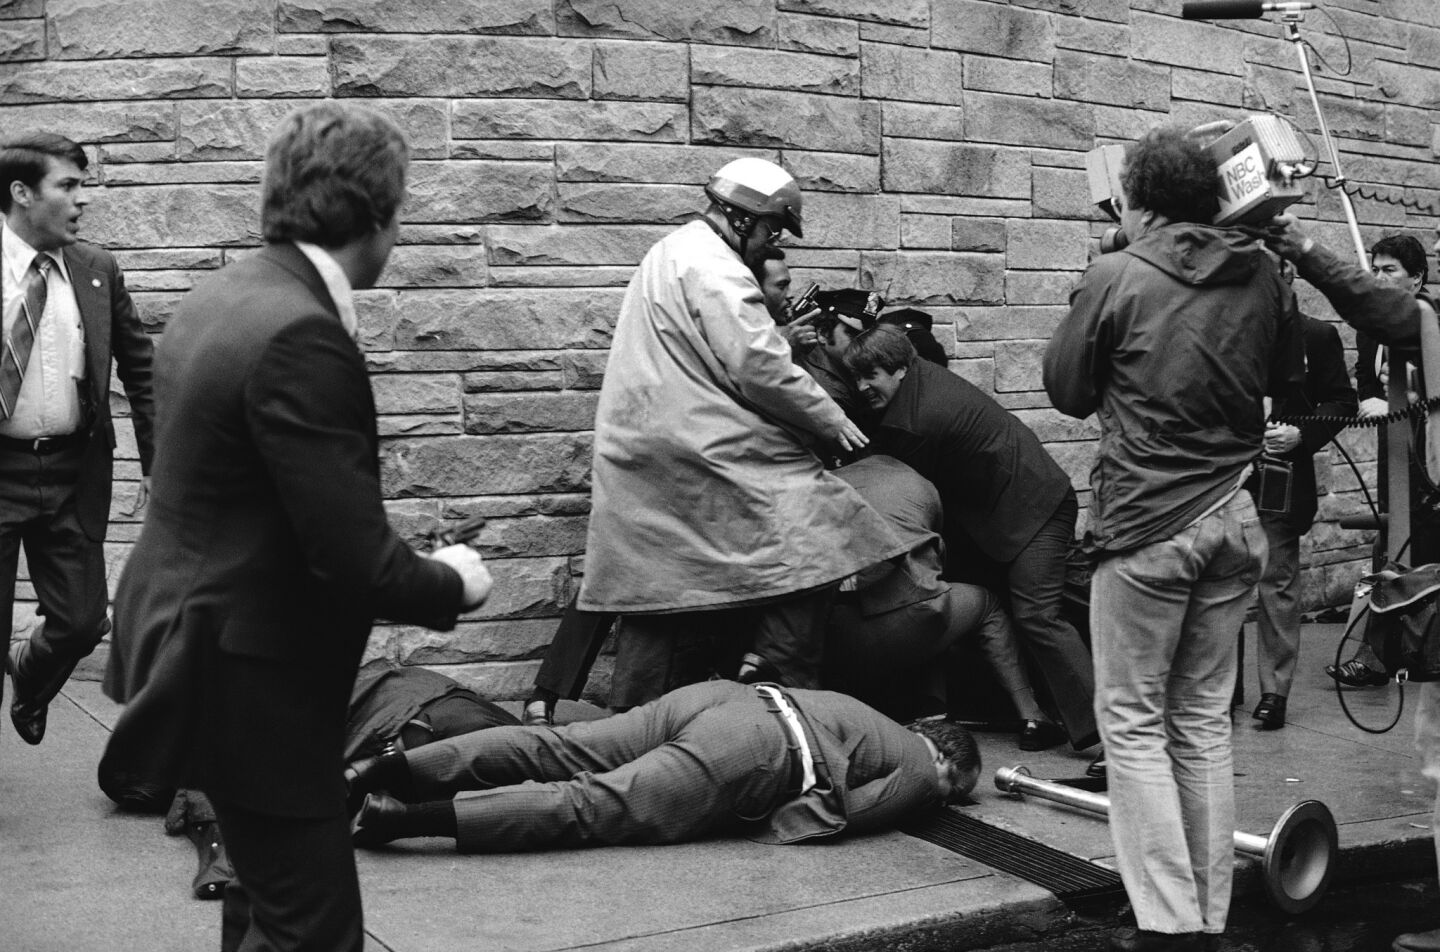 1981 assassination attempt on President Reagan